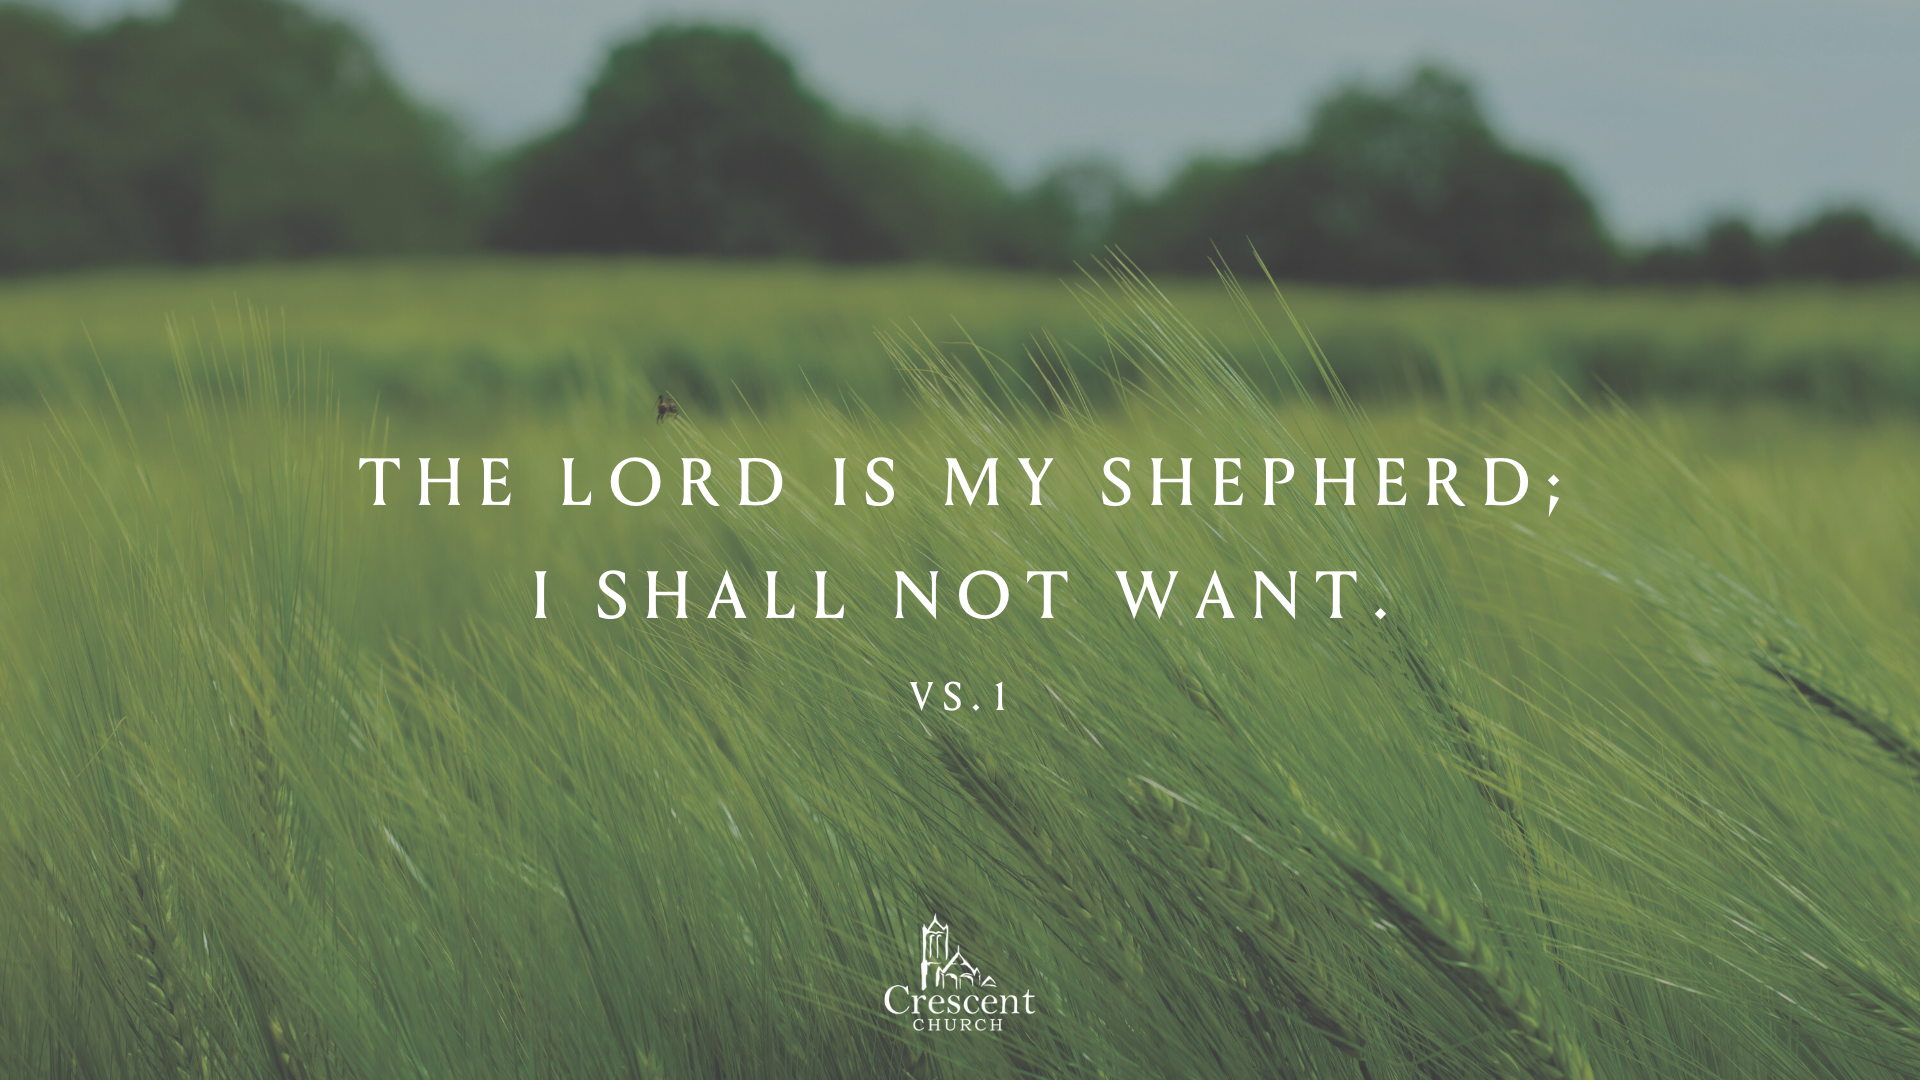 The Lord - My Shepherd